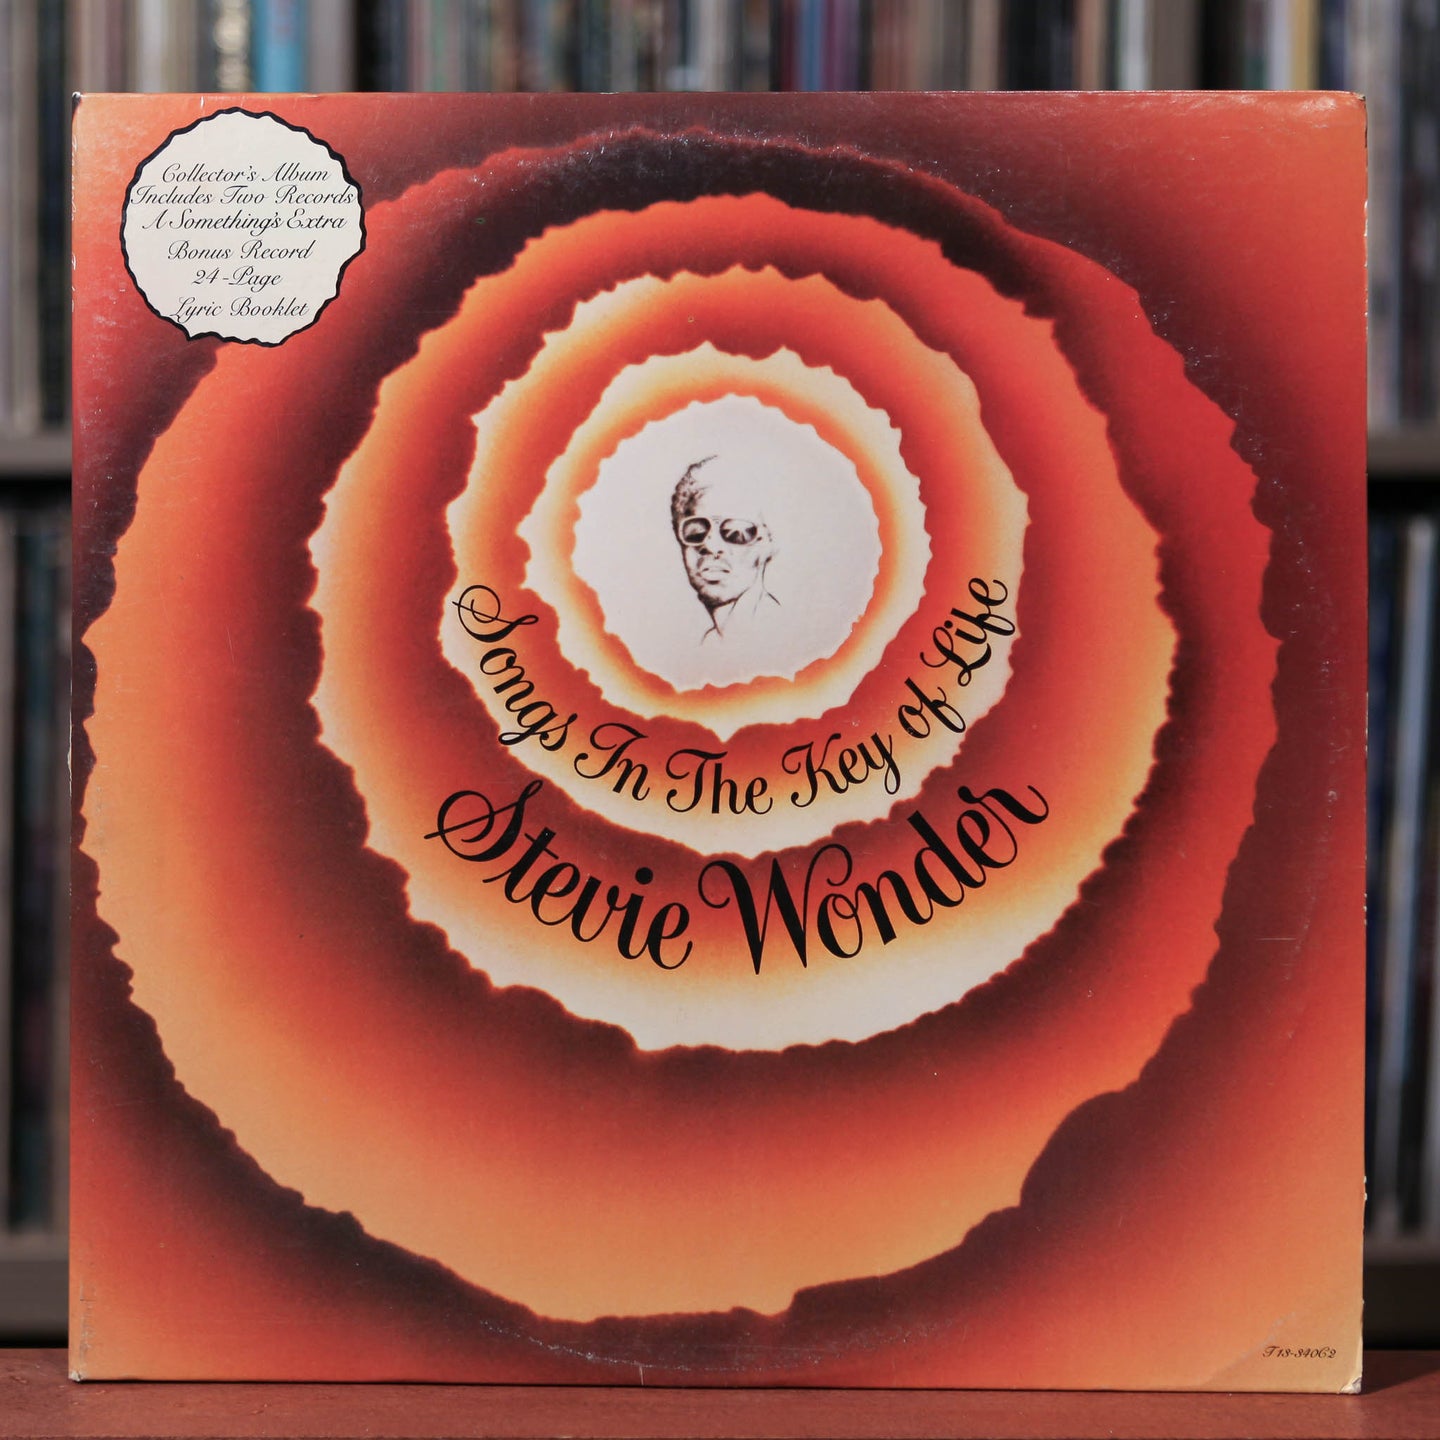 Stevie Wonder - Songs In The Key Of Life - 2LP - 1976 Tamla, VG+/VG+ w/Booklet